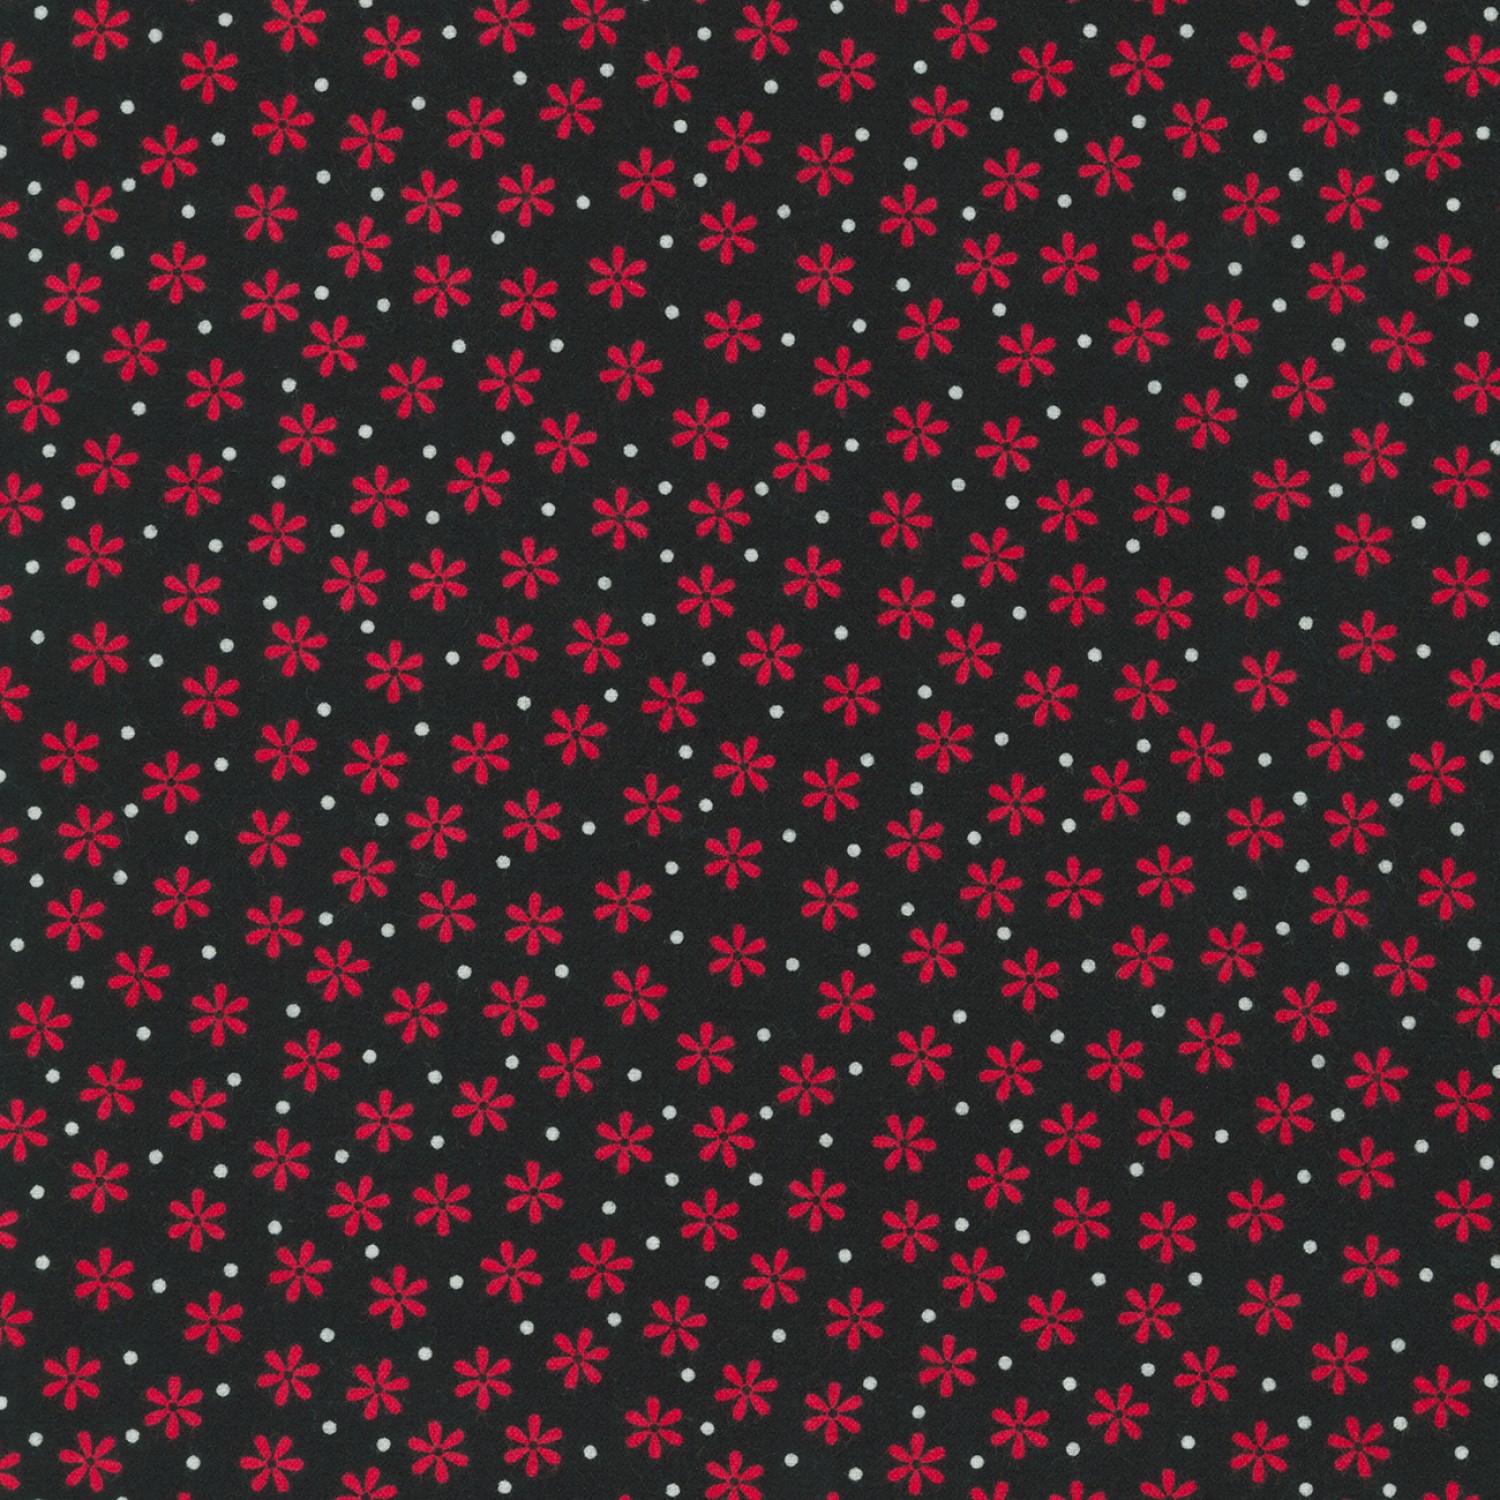 Cozy Cotton Flannel Floral - Black - 8978-2